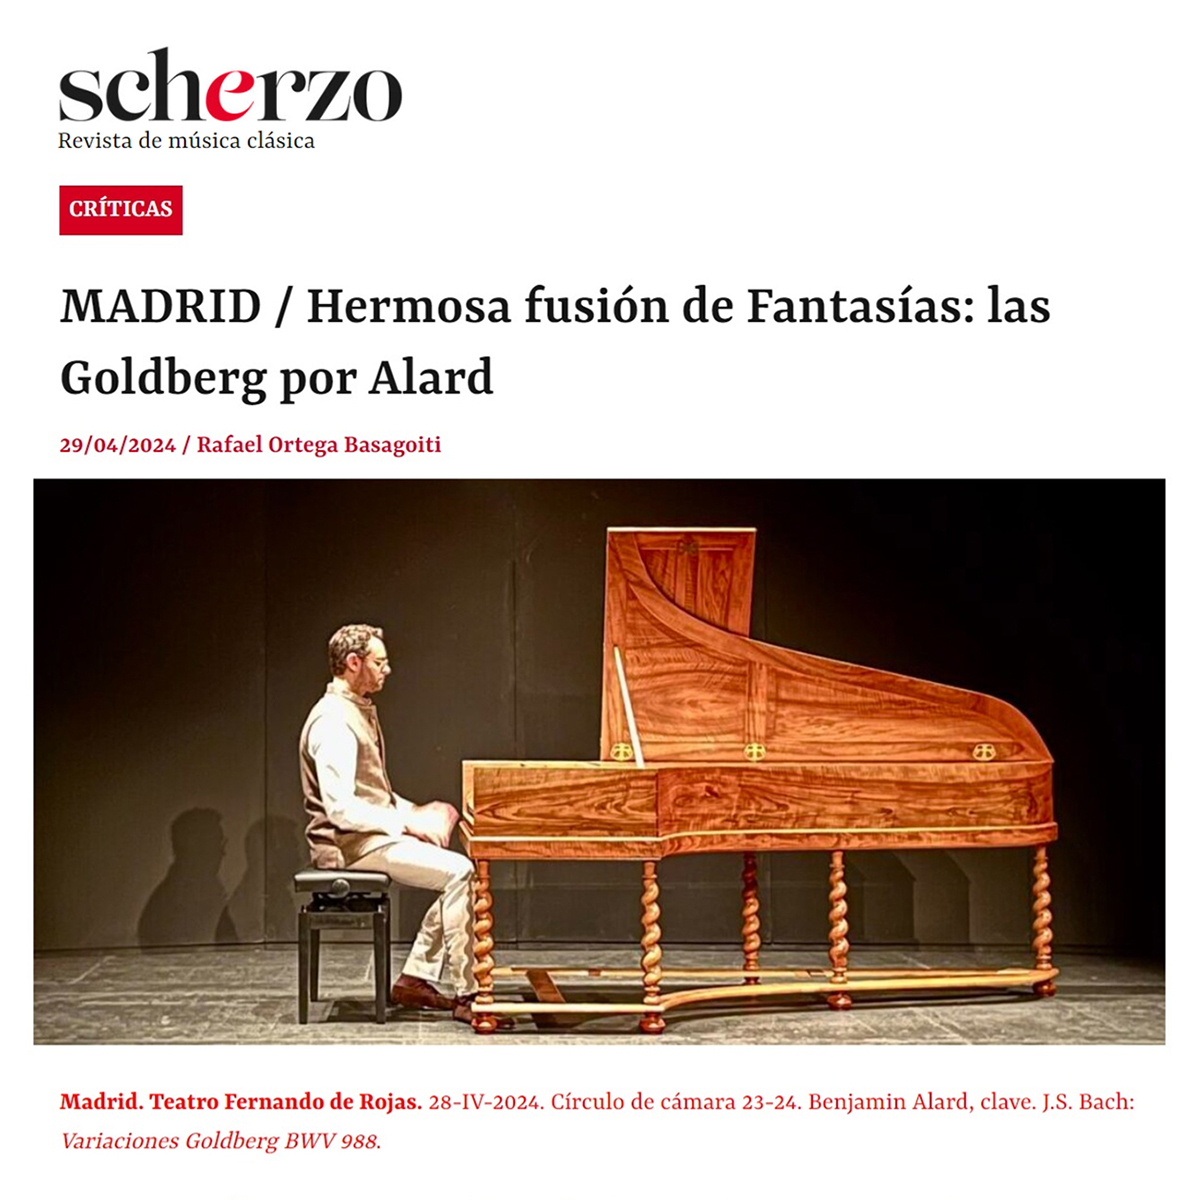 MADRID / Hermosa fusión de Fantasías: las Goldberg por Alard